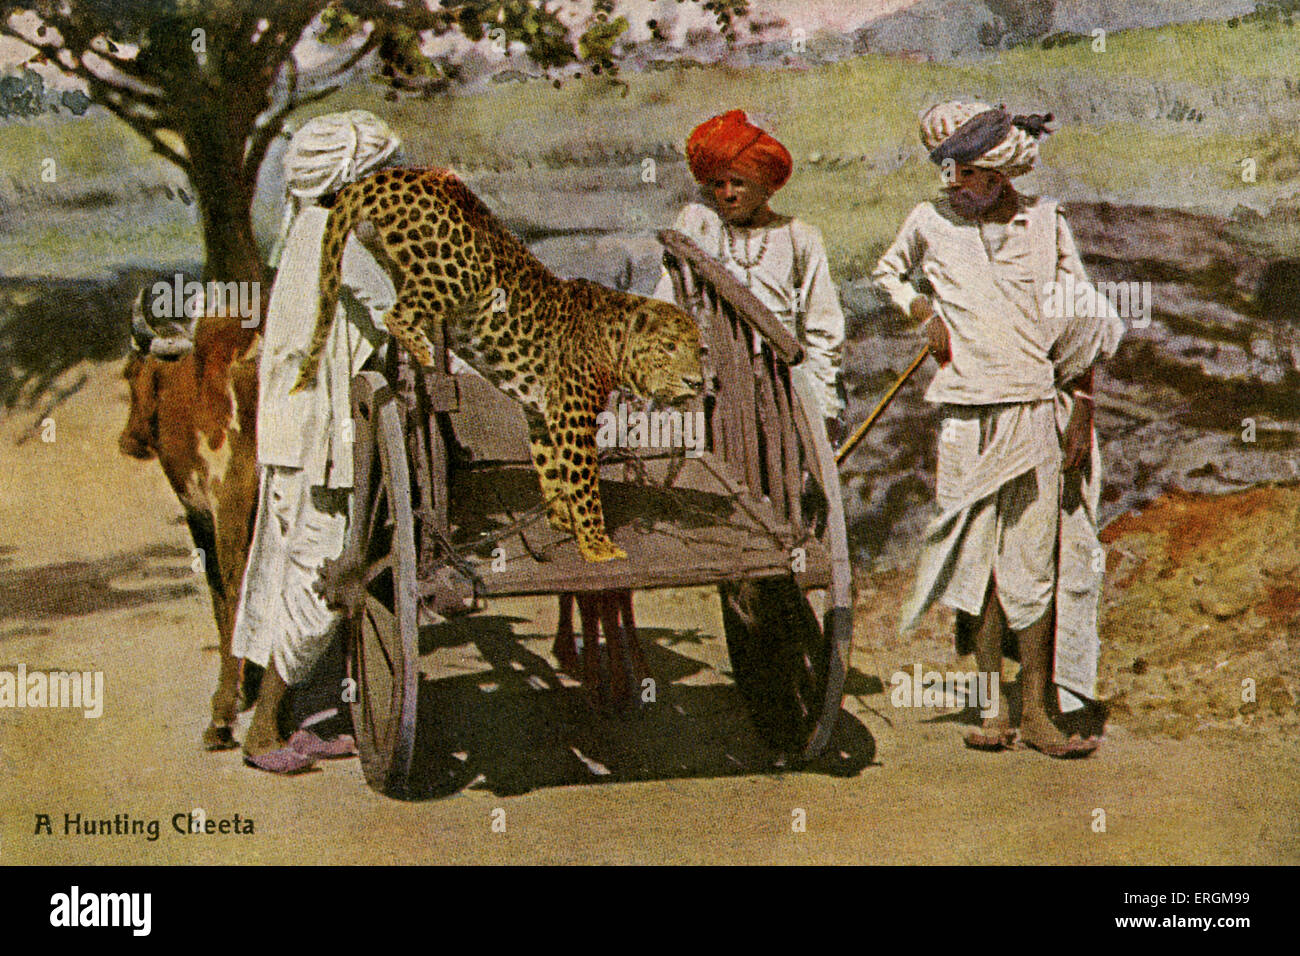 Xana indiens enchaînés à un panier. Photographie colorisée du début du xxe siècle. Sous-titre suivant 'un'. Xana chasse Banque D'Images